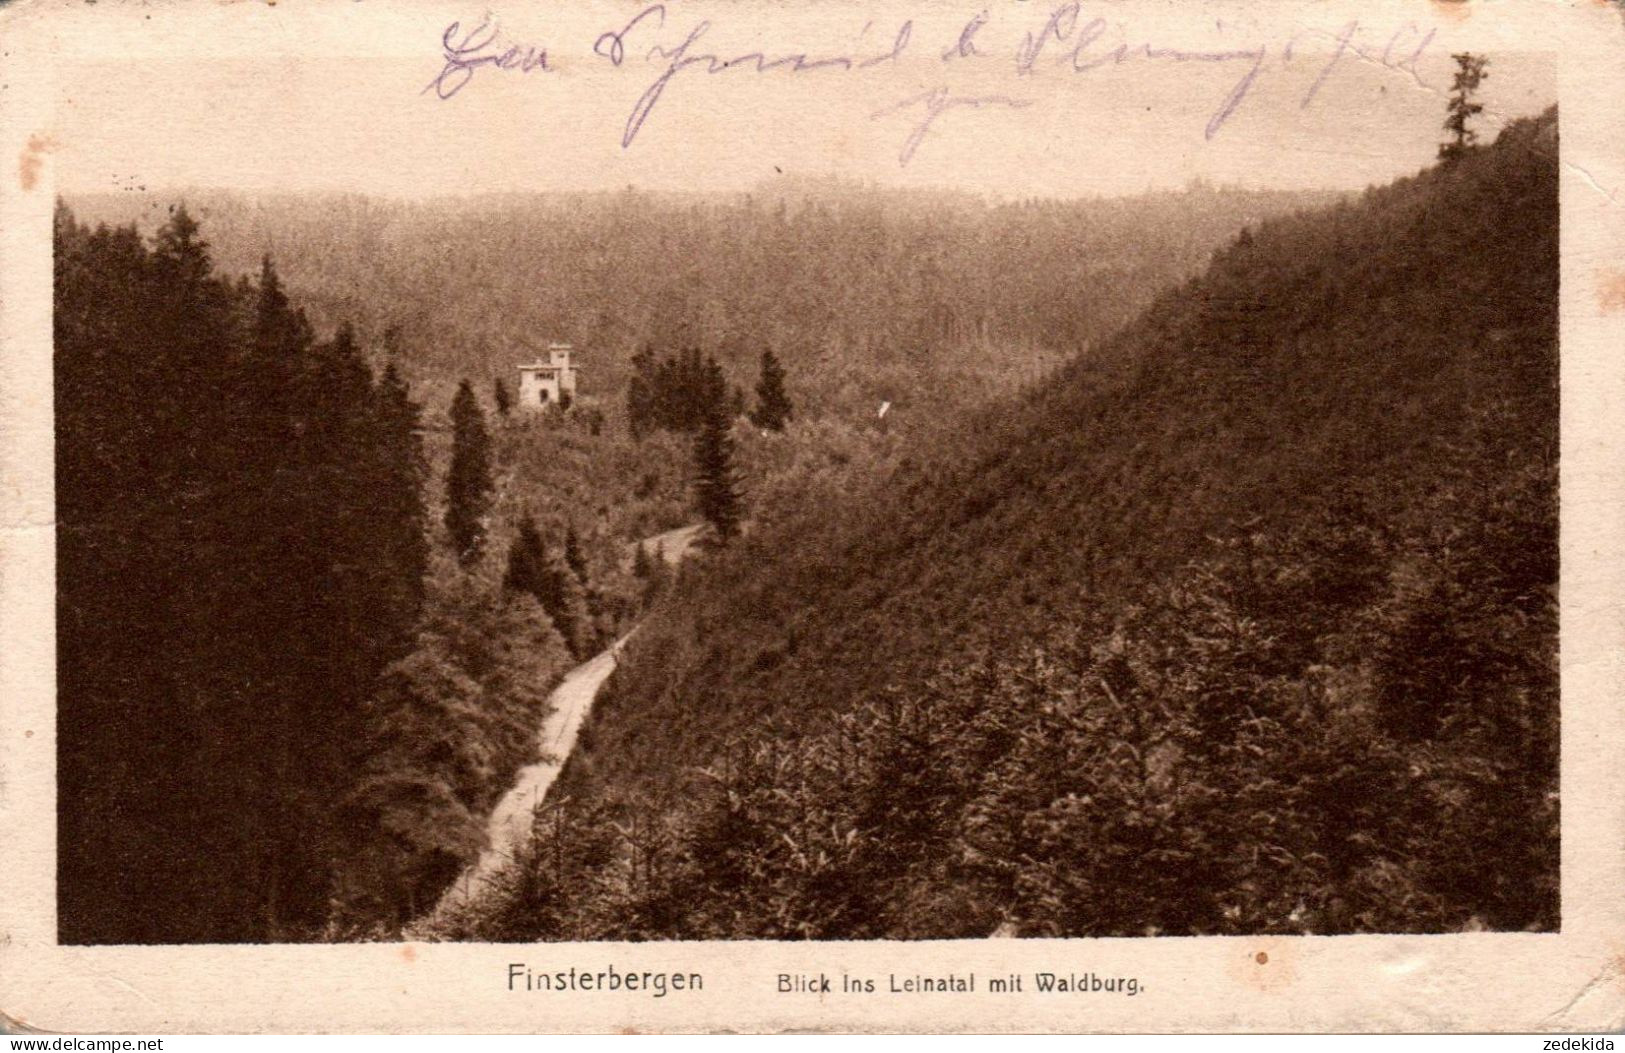 H1800 - Finsterbergen Leinatal Mit Waldburg - Georg Krautwurst - Friedrichroda